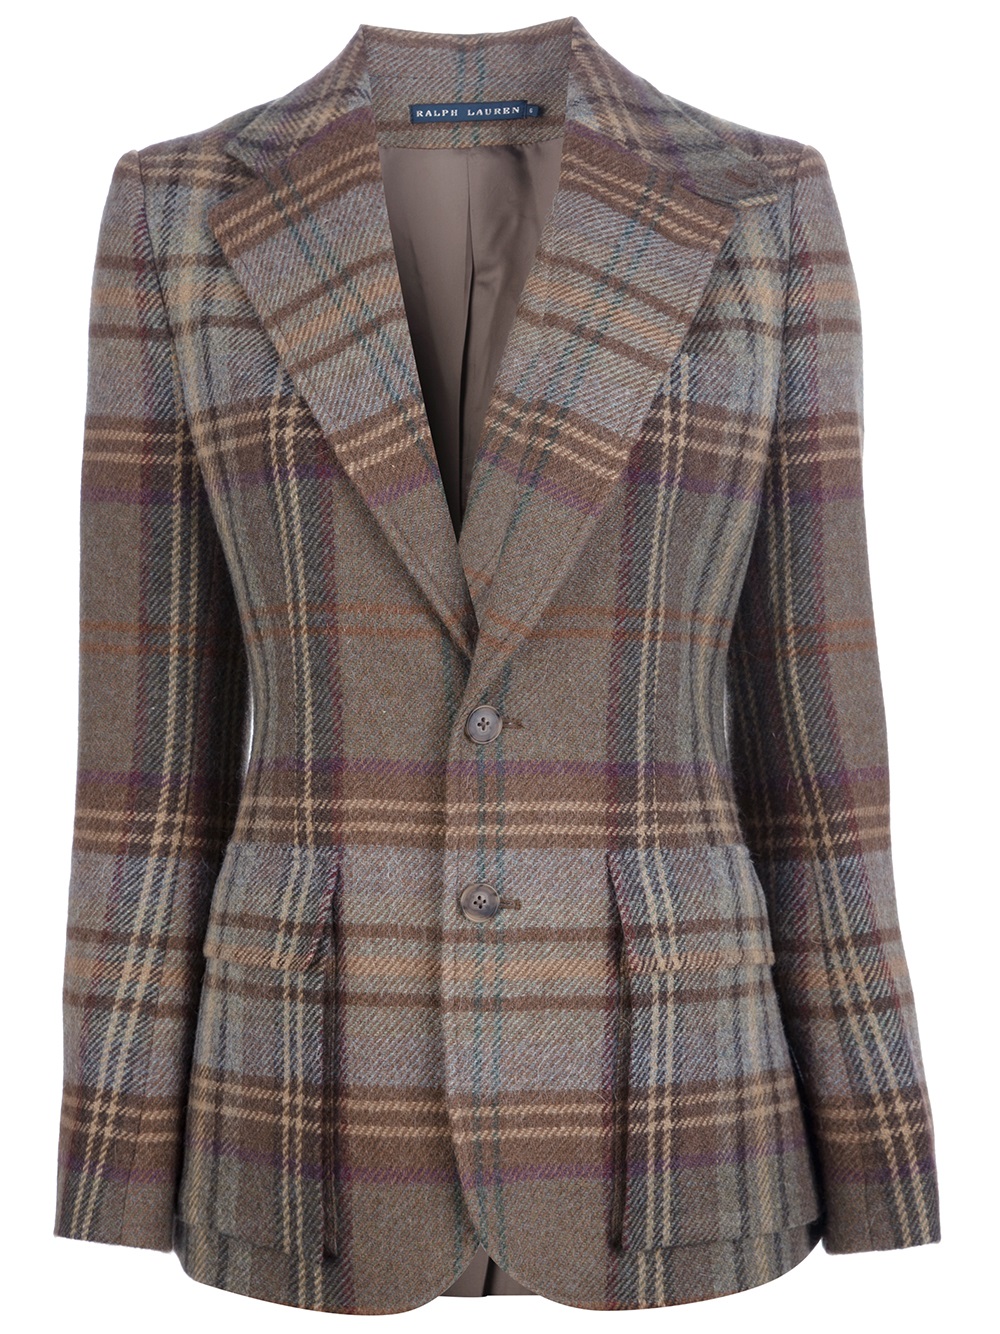 Lyst - Ralph Lauren Plaid Tweed Jacket in Brown